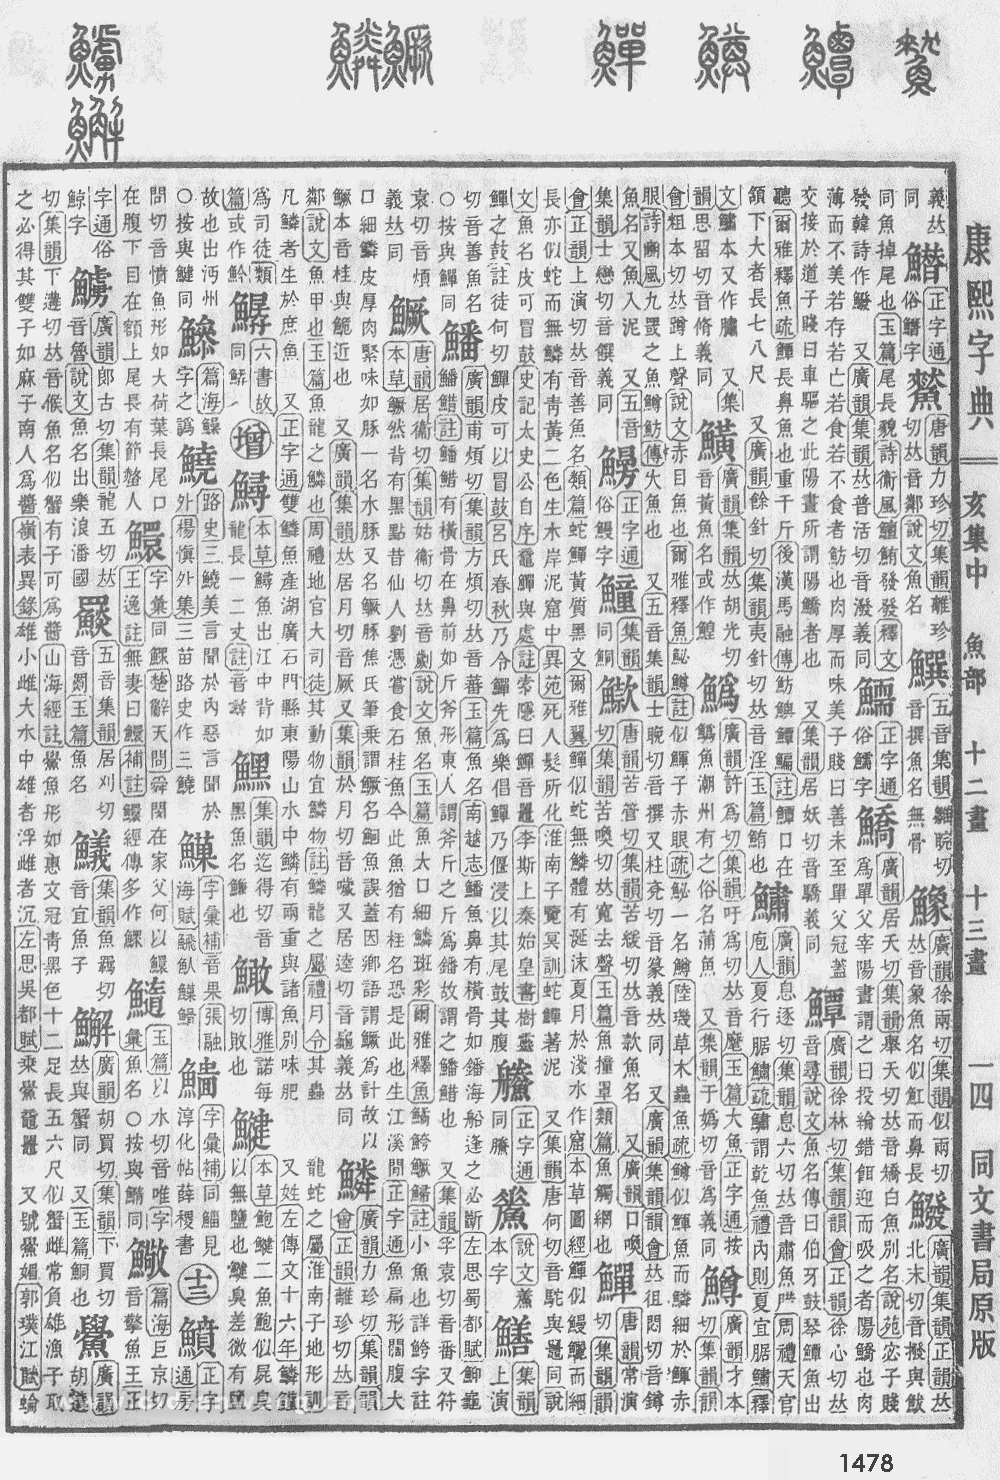 康熙字典掃描版第1478頁